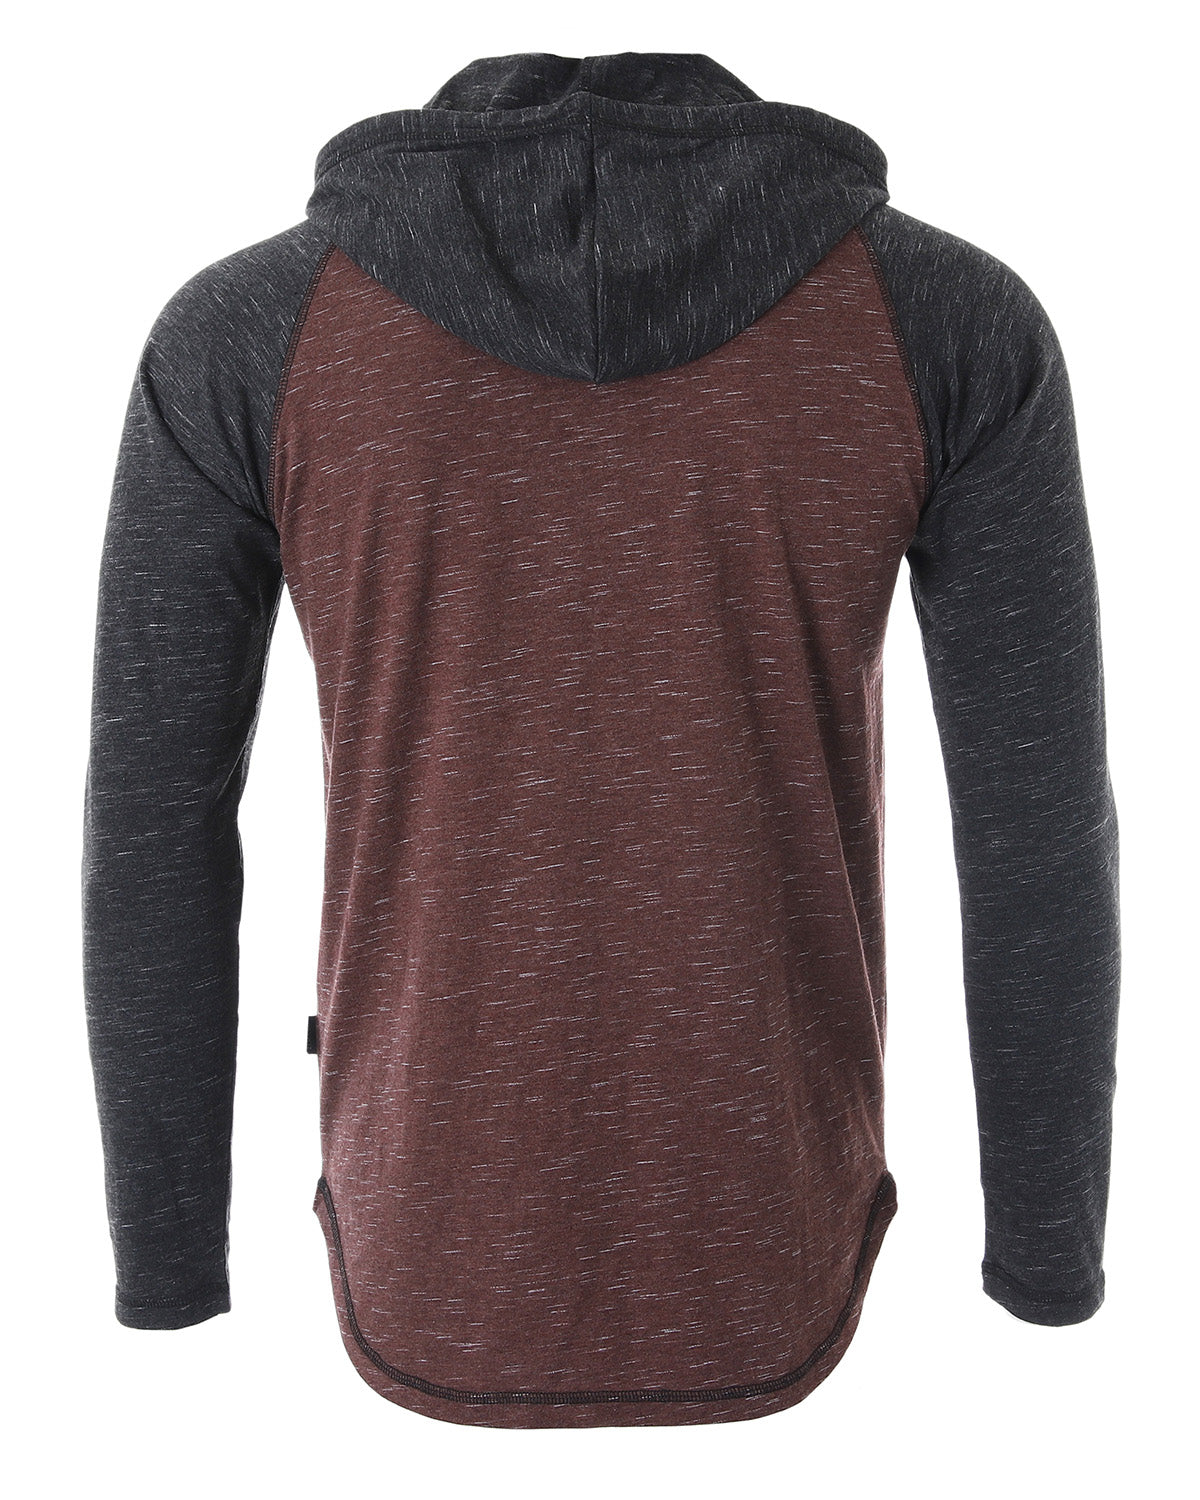 Long Sleeve Raglan Henley Round Bottom Hood T-Shirts - BLACK / MAROON